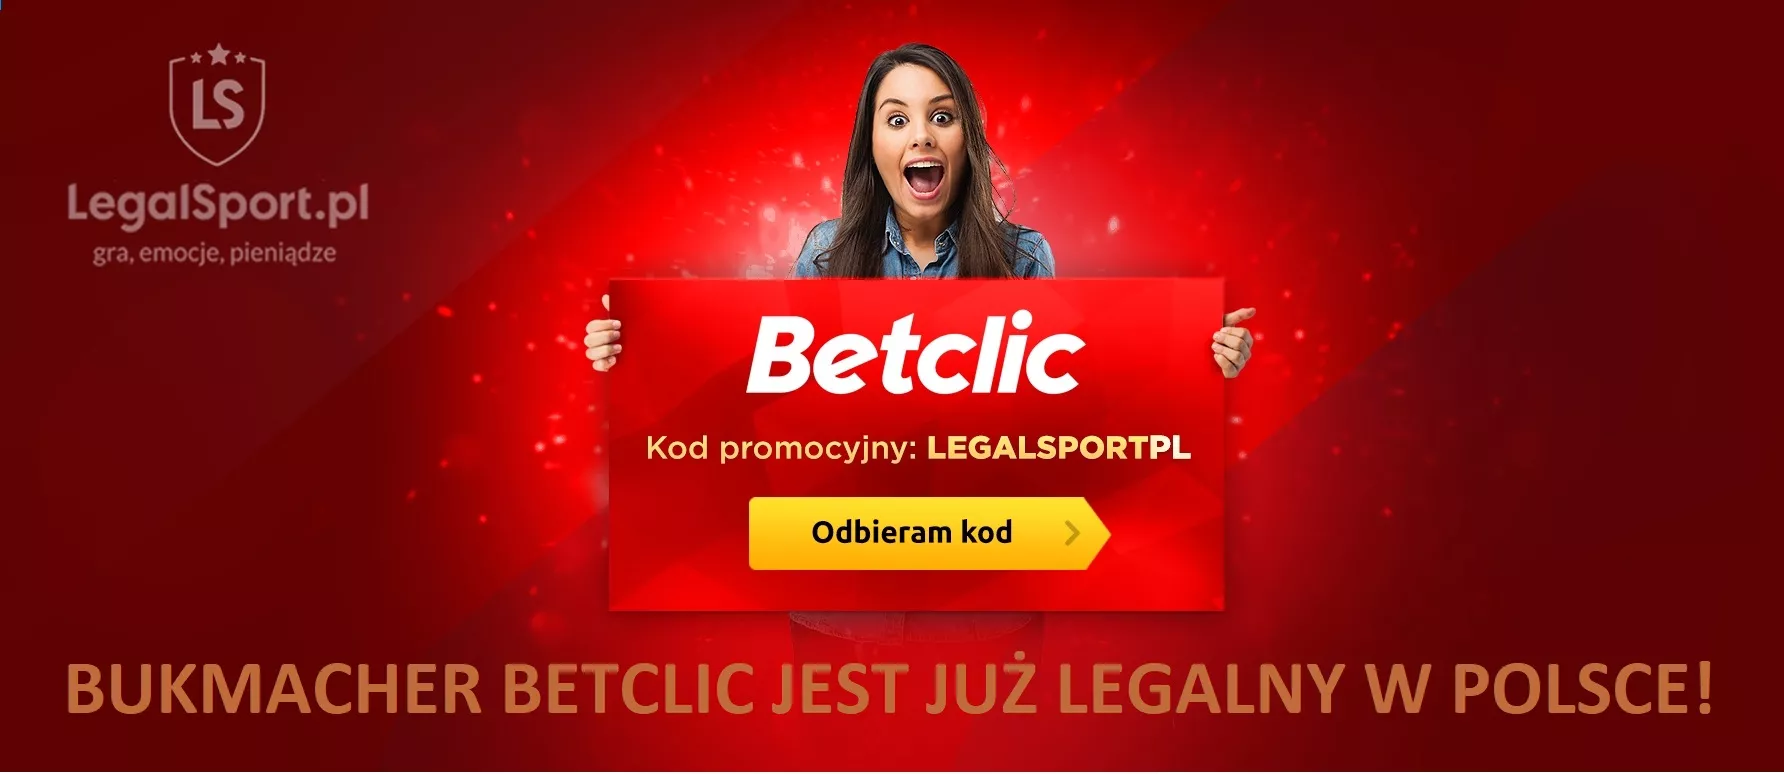 Bukmacher Betclic jest już legalny w Polsce i aktywował ultranowoczesny kod promocyjny do bonusu